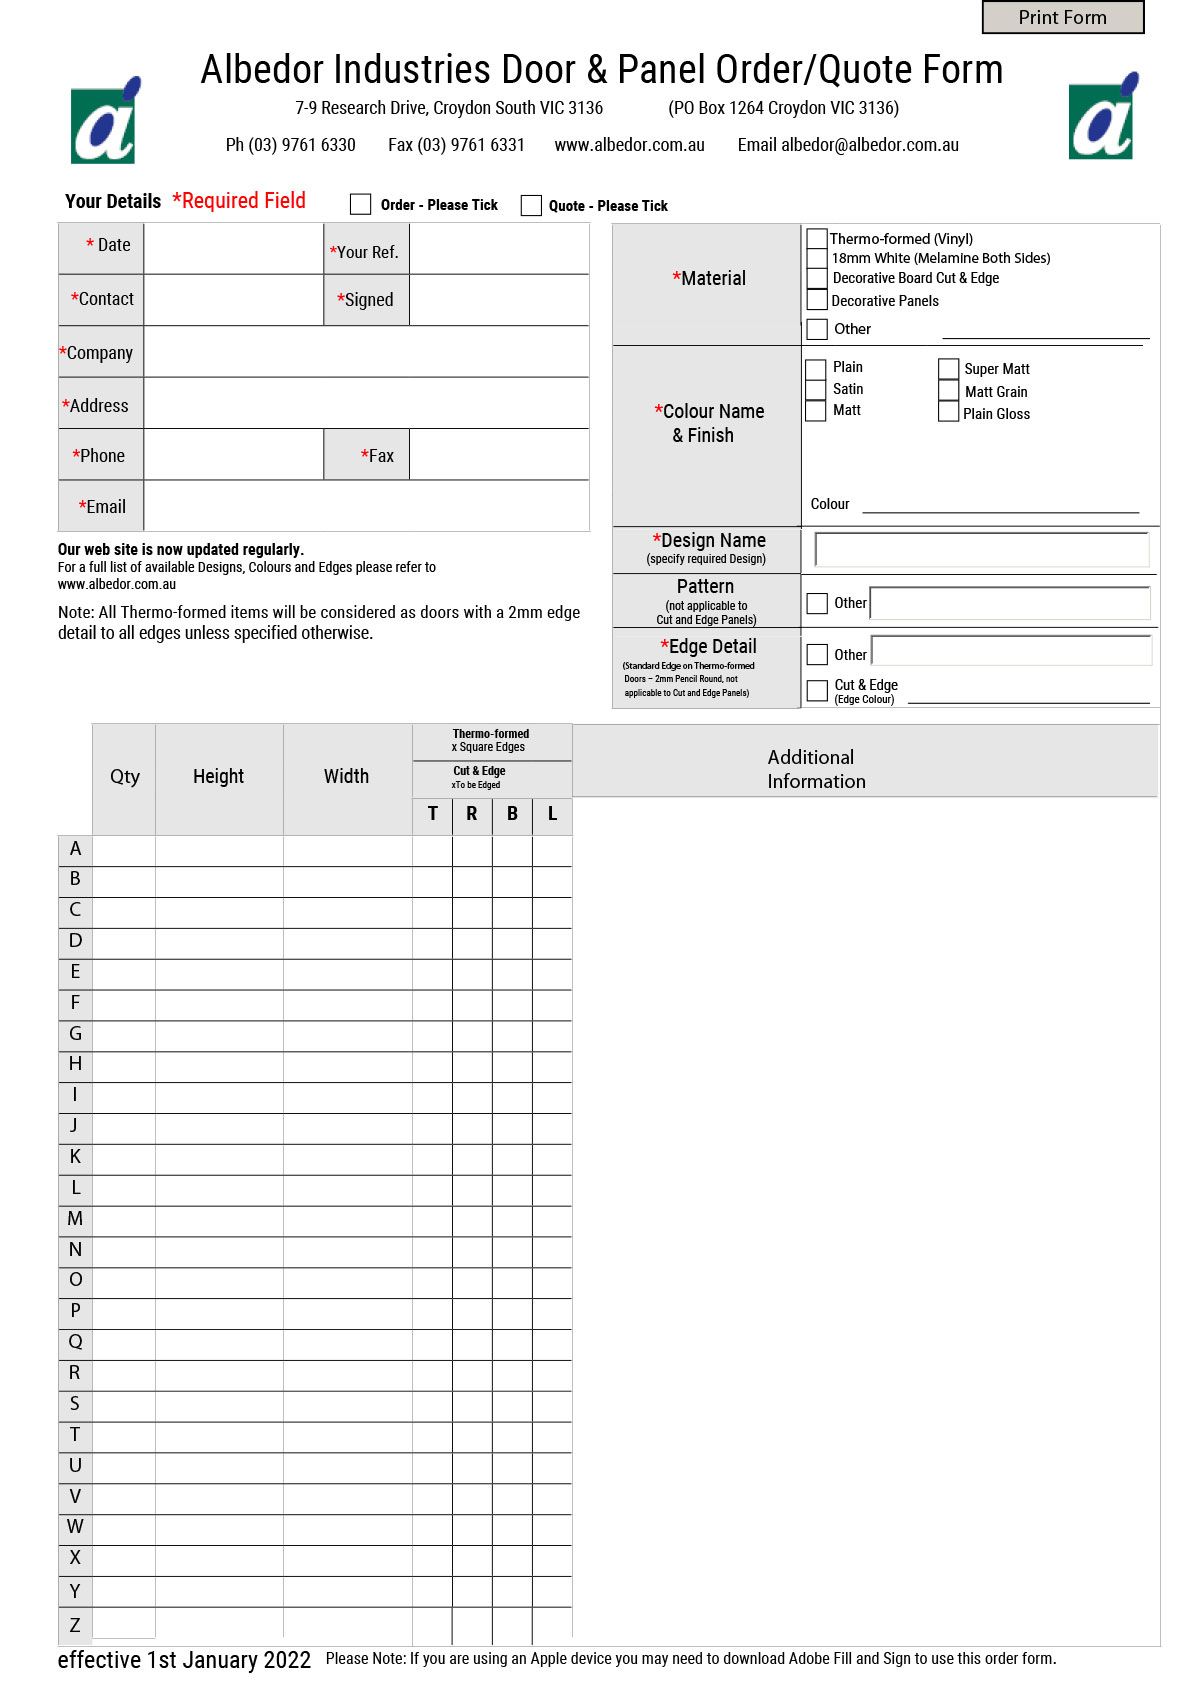 Albedor Door and Panel Order Form